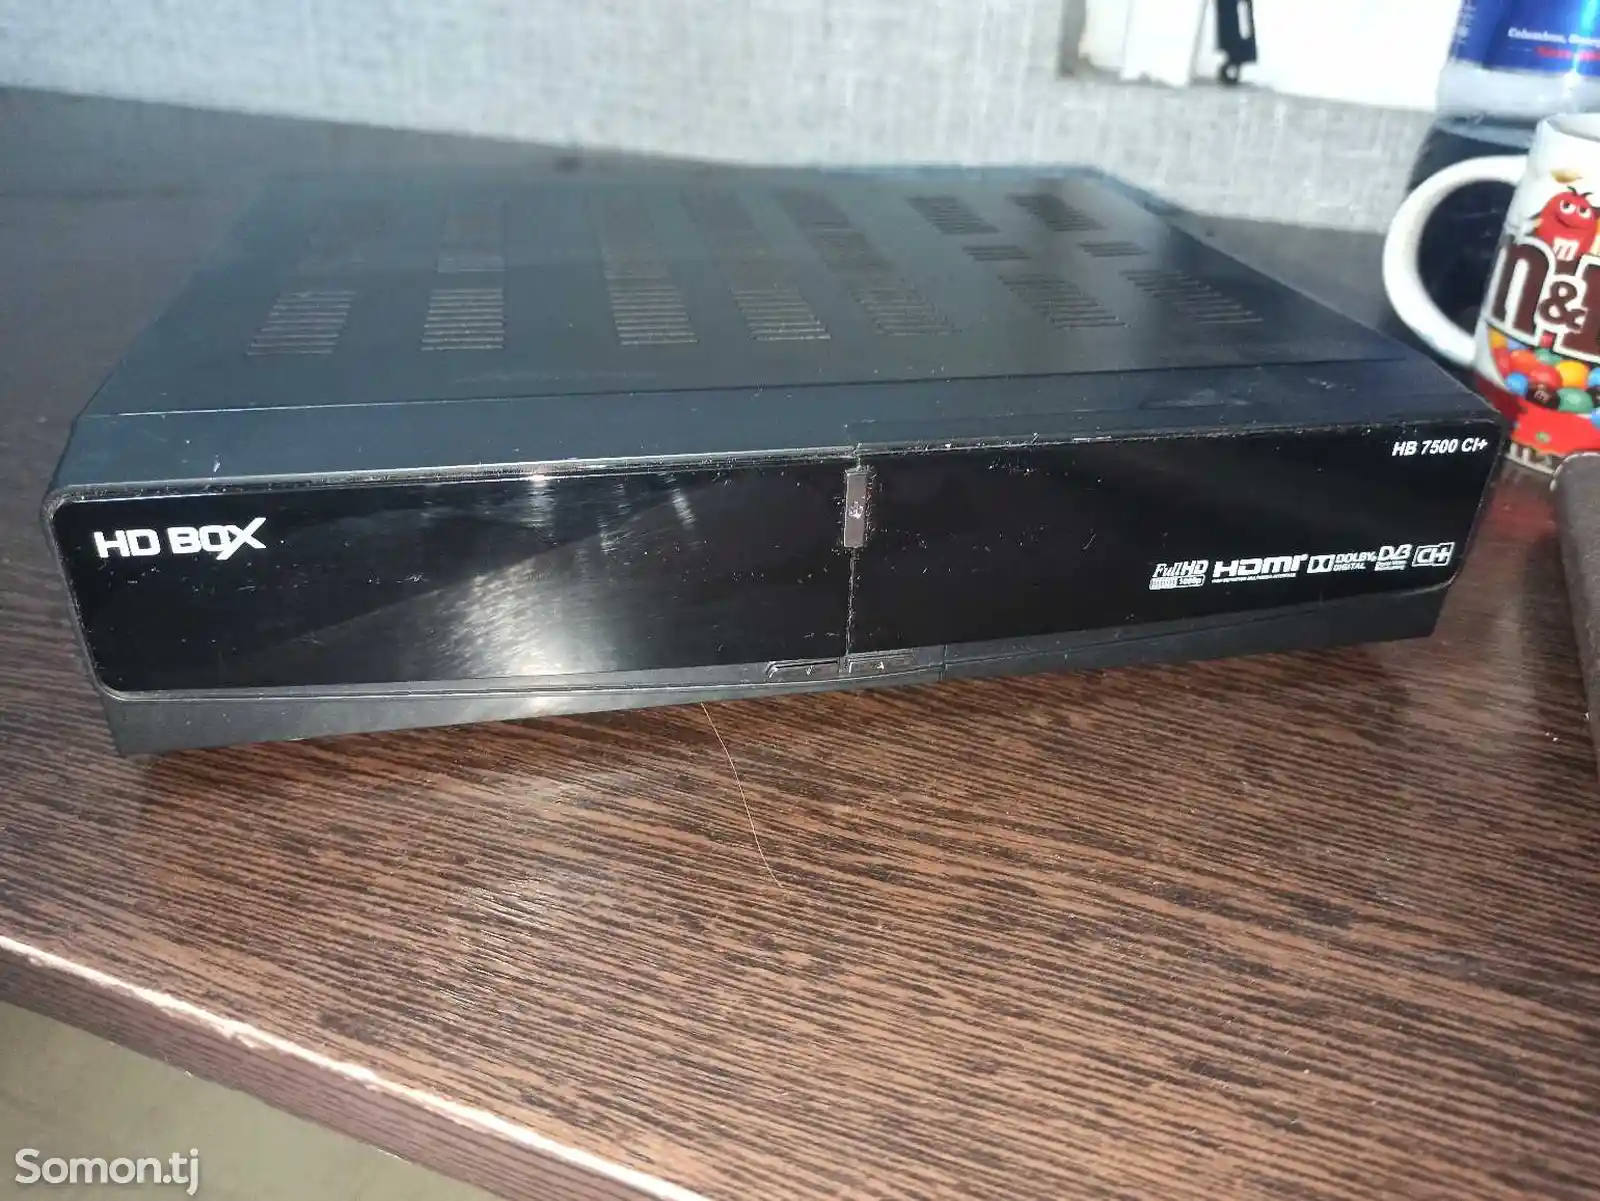 Ресивер HD BOX HB7500 CI+-1